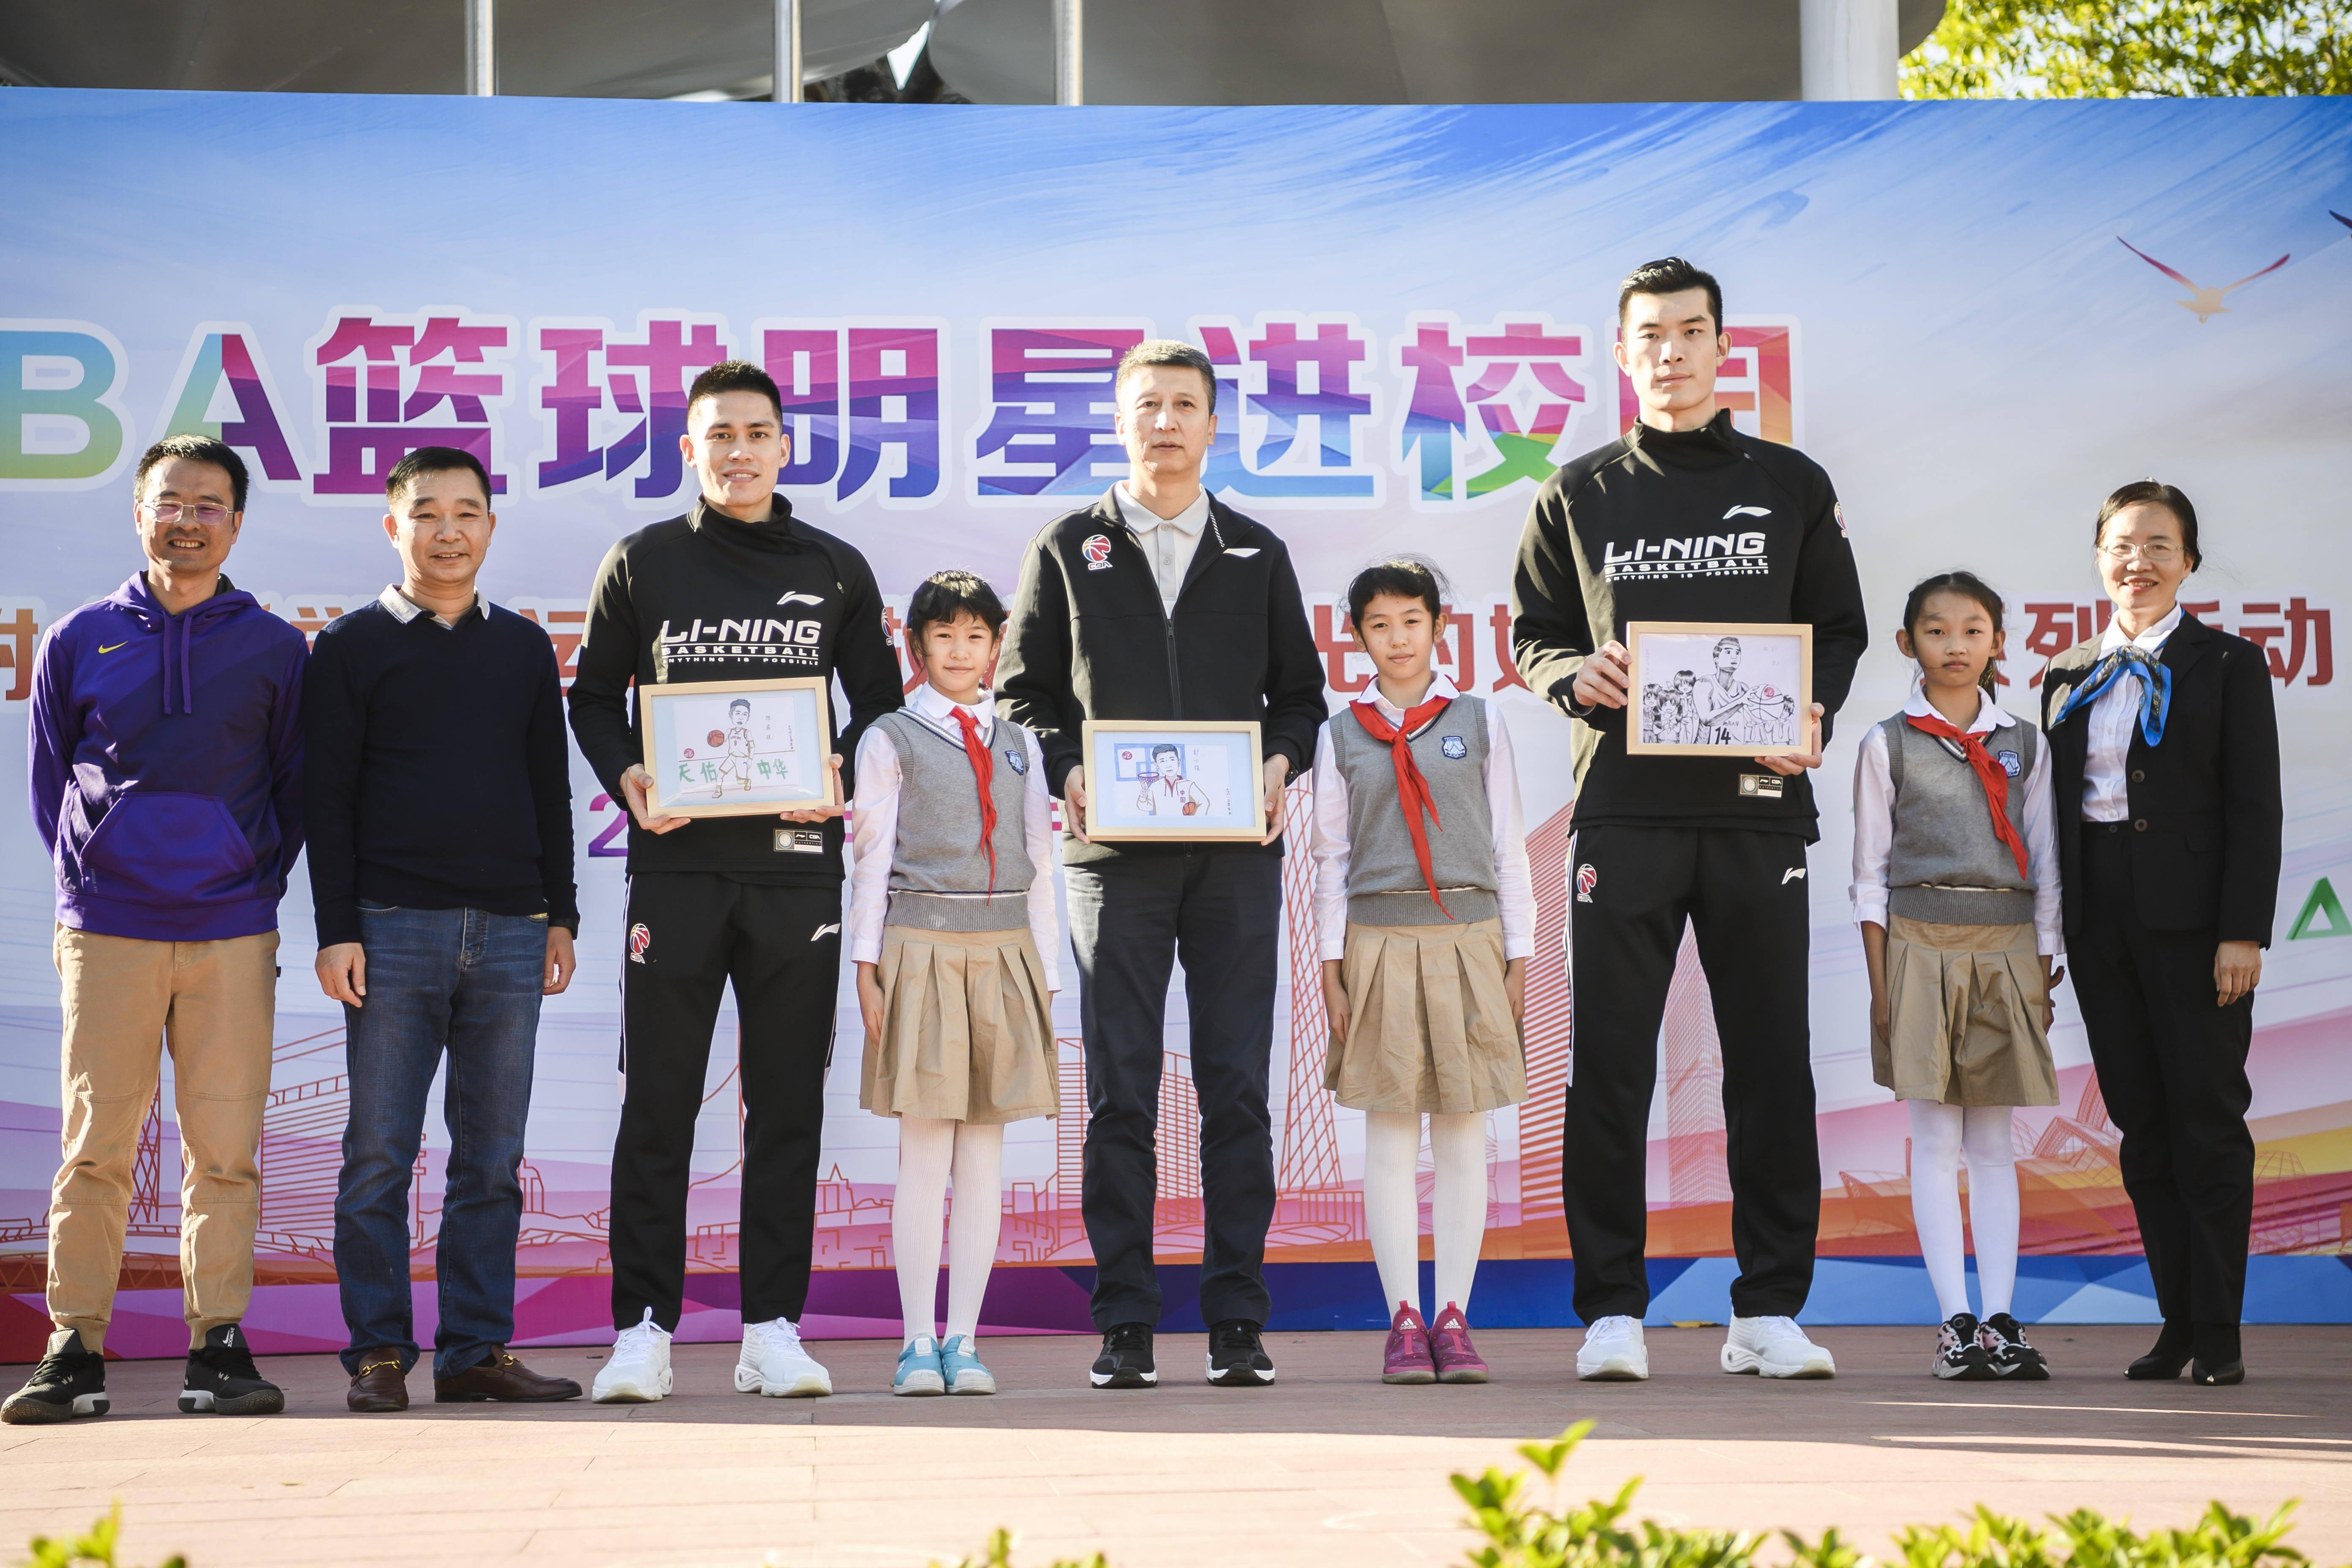 信息时报记者 陆明杰 摄  活动最后,华南师大附小男子篮球队队员与